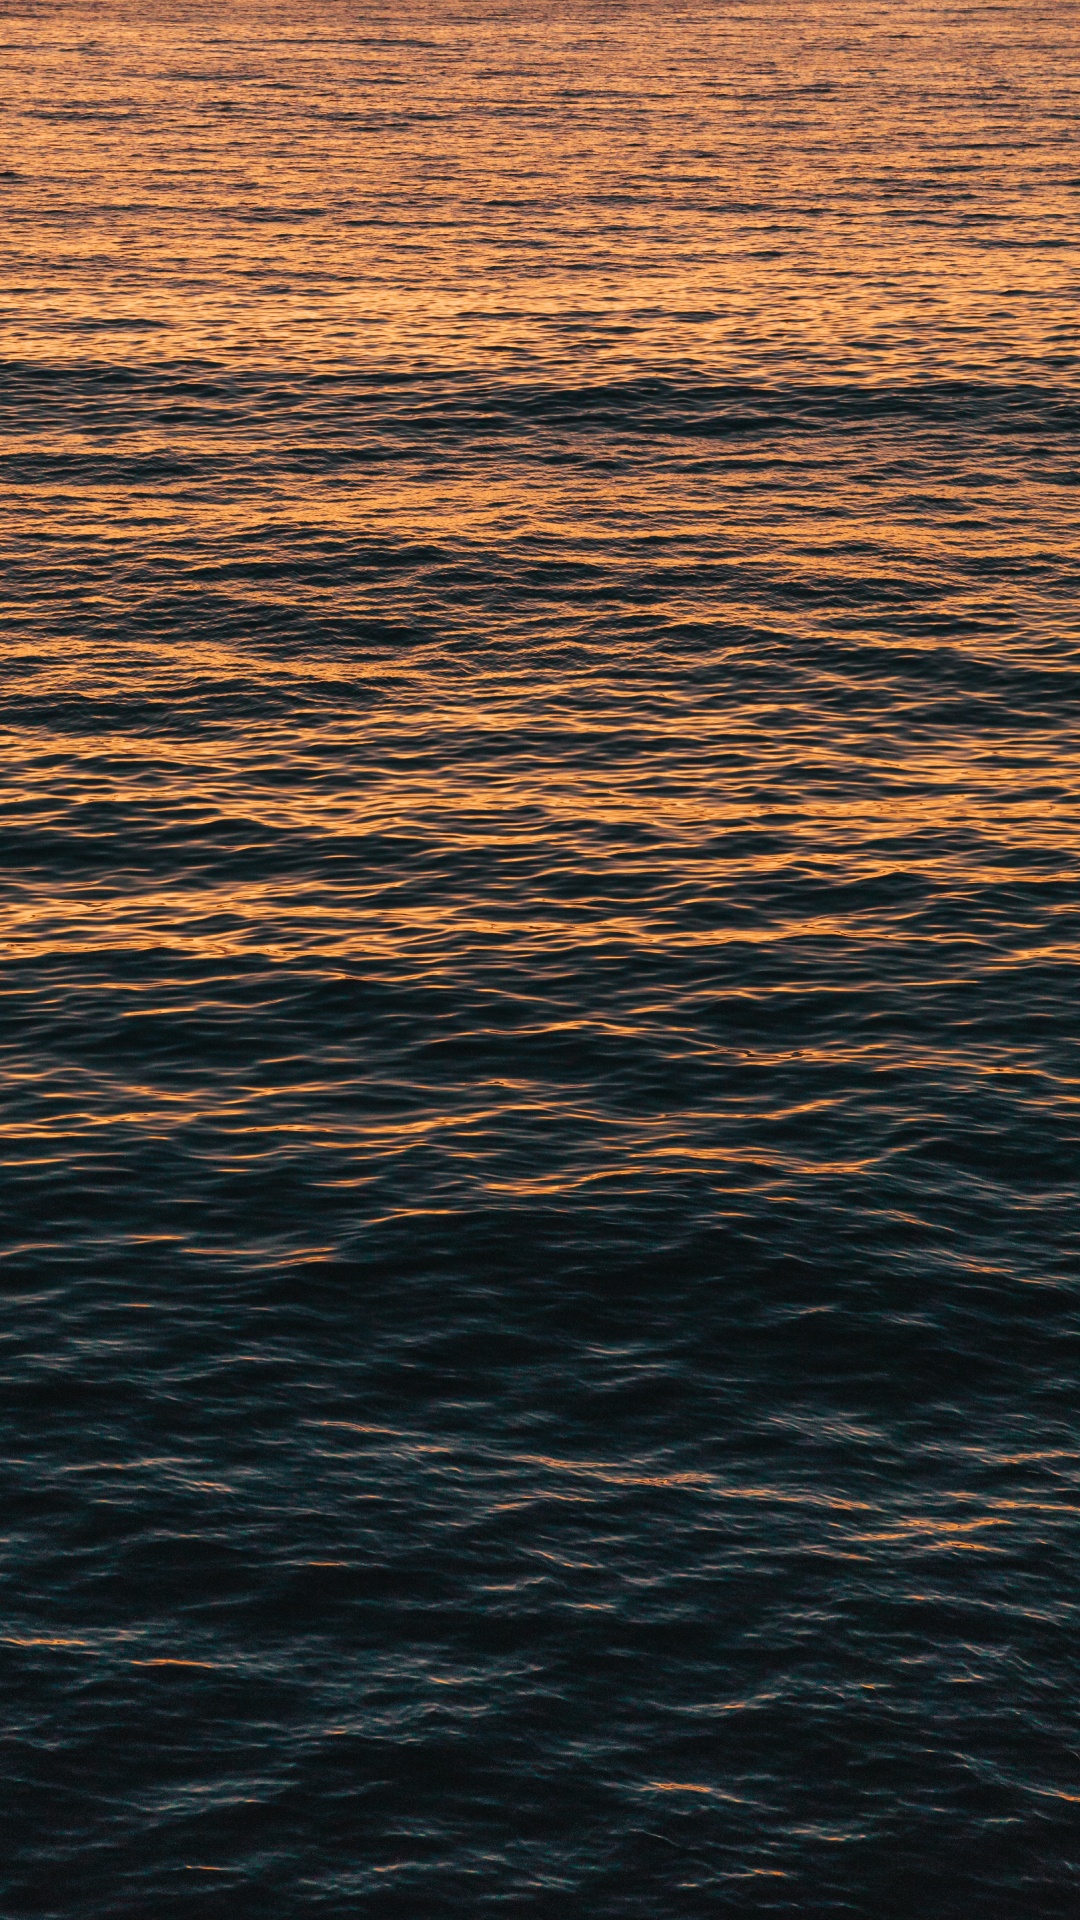 Agua, Mar, Oceano, Calma, Reflexión. Wallpaper in 1080x1920 Resolution